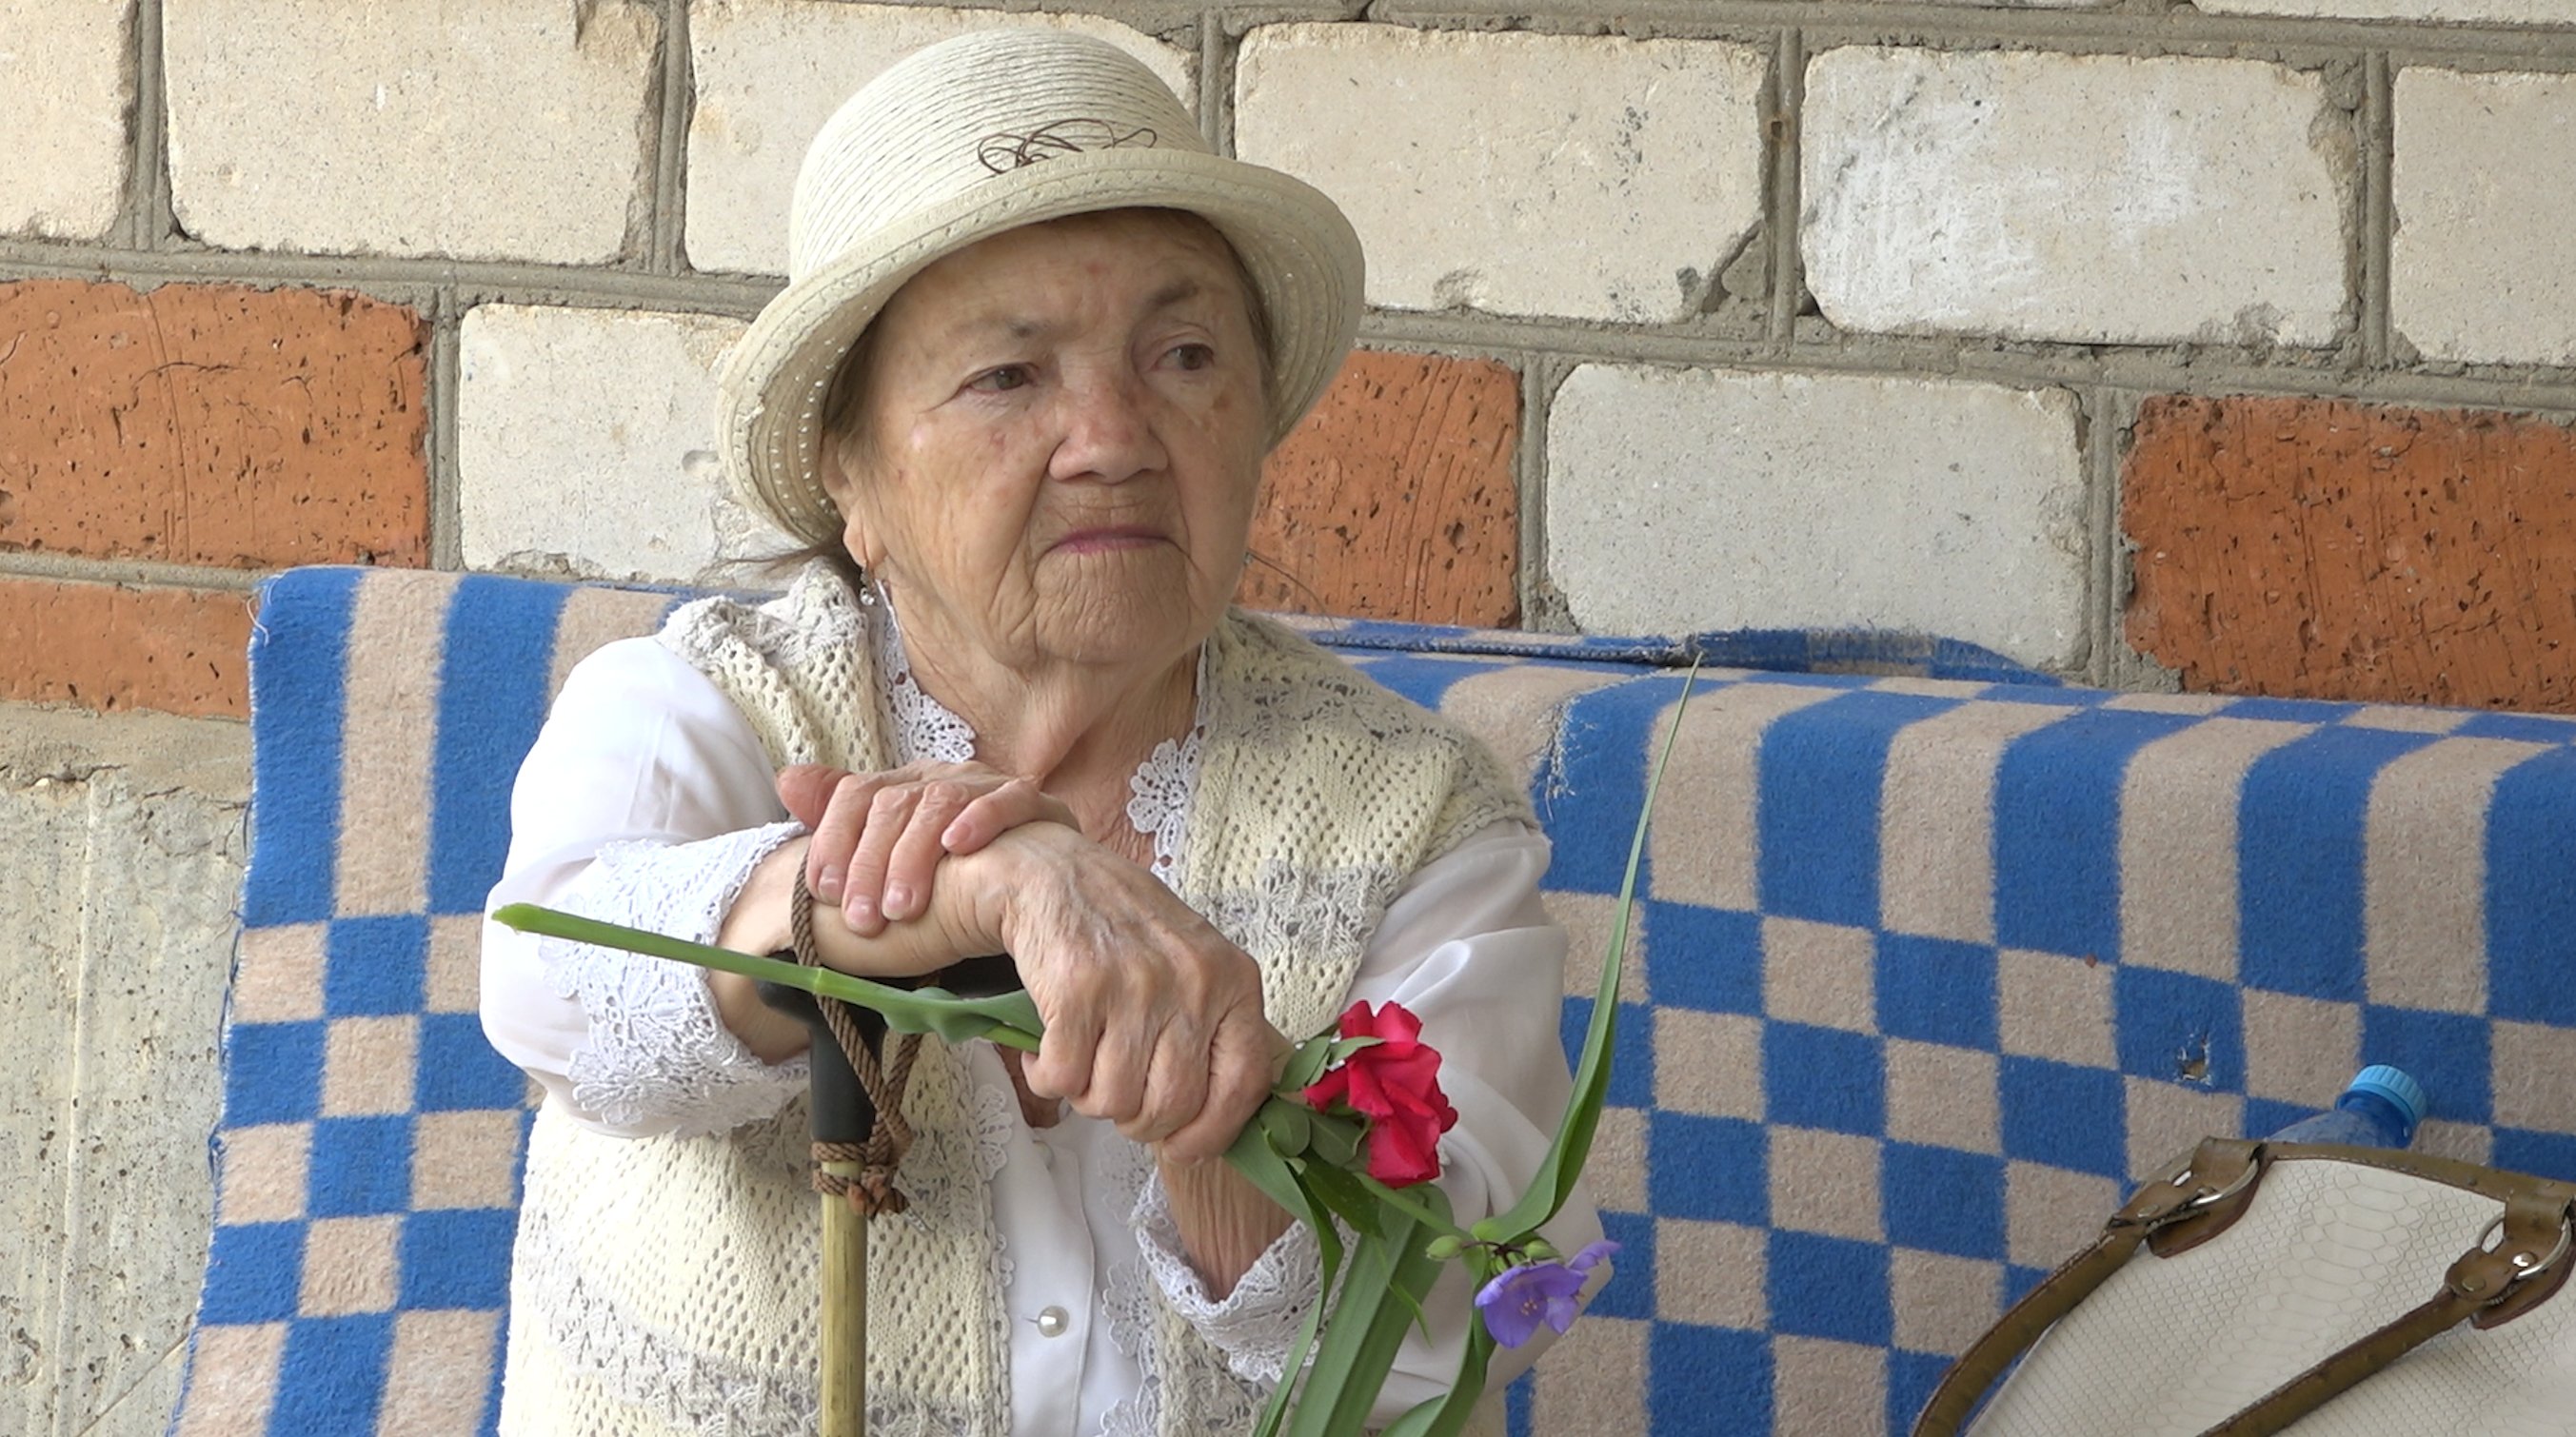 Elderly woman in garden clothes